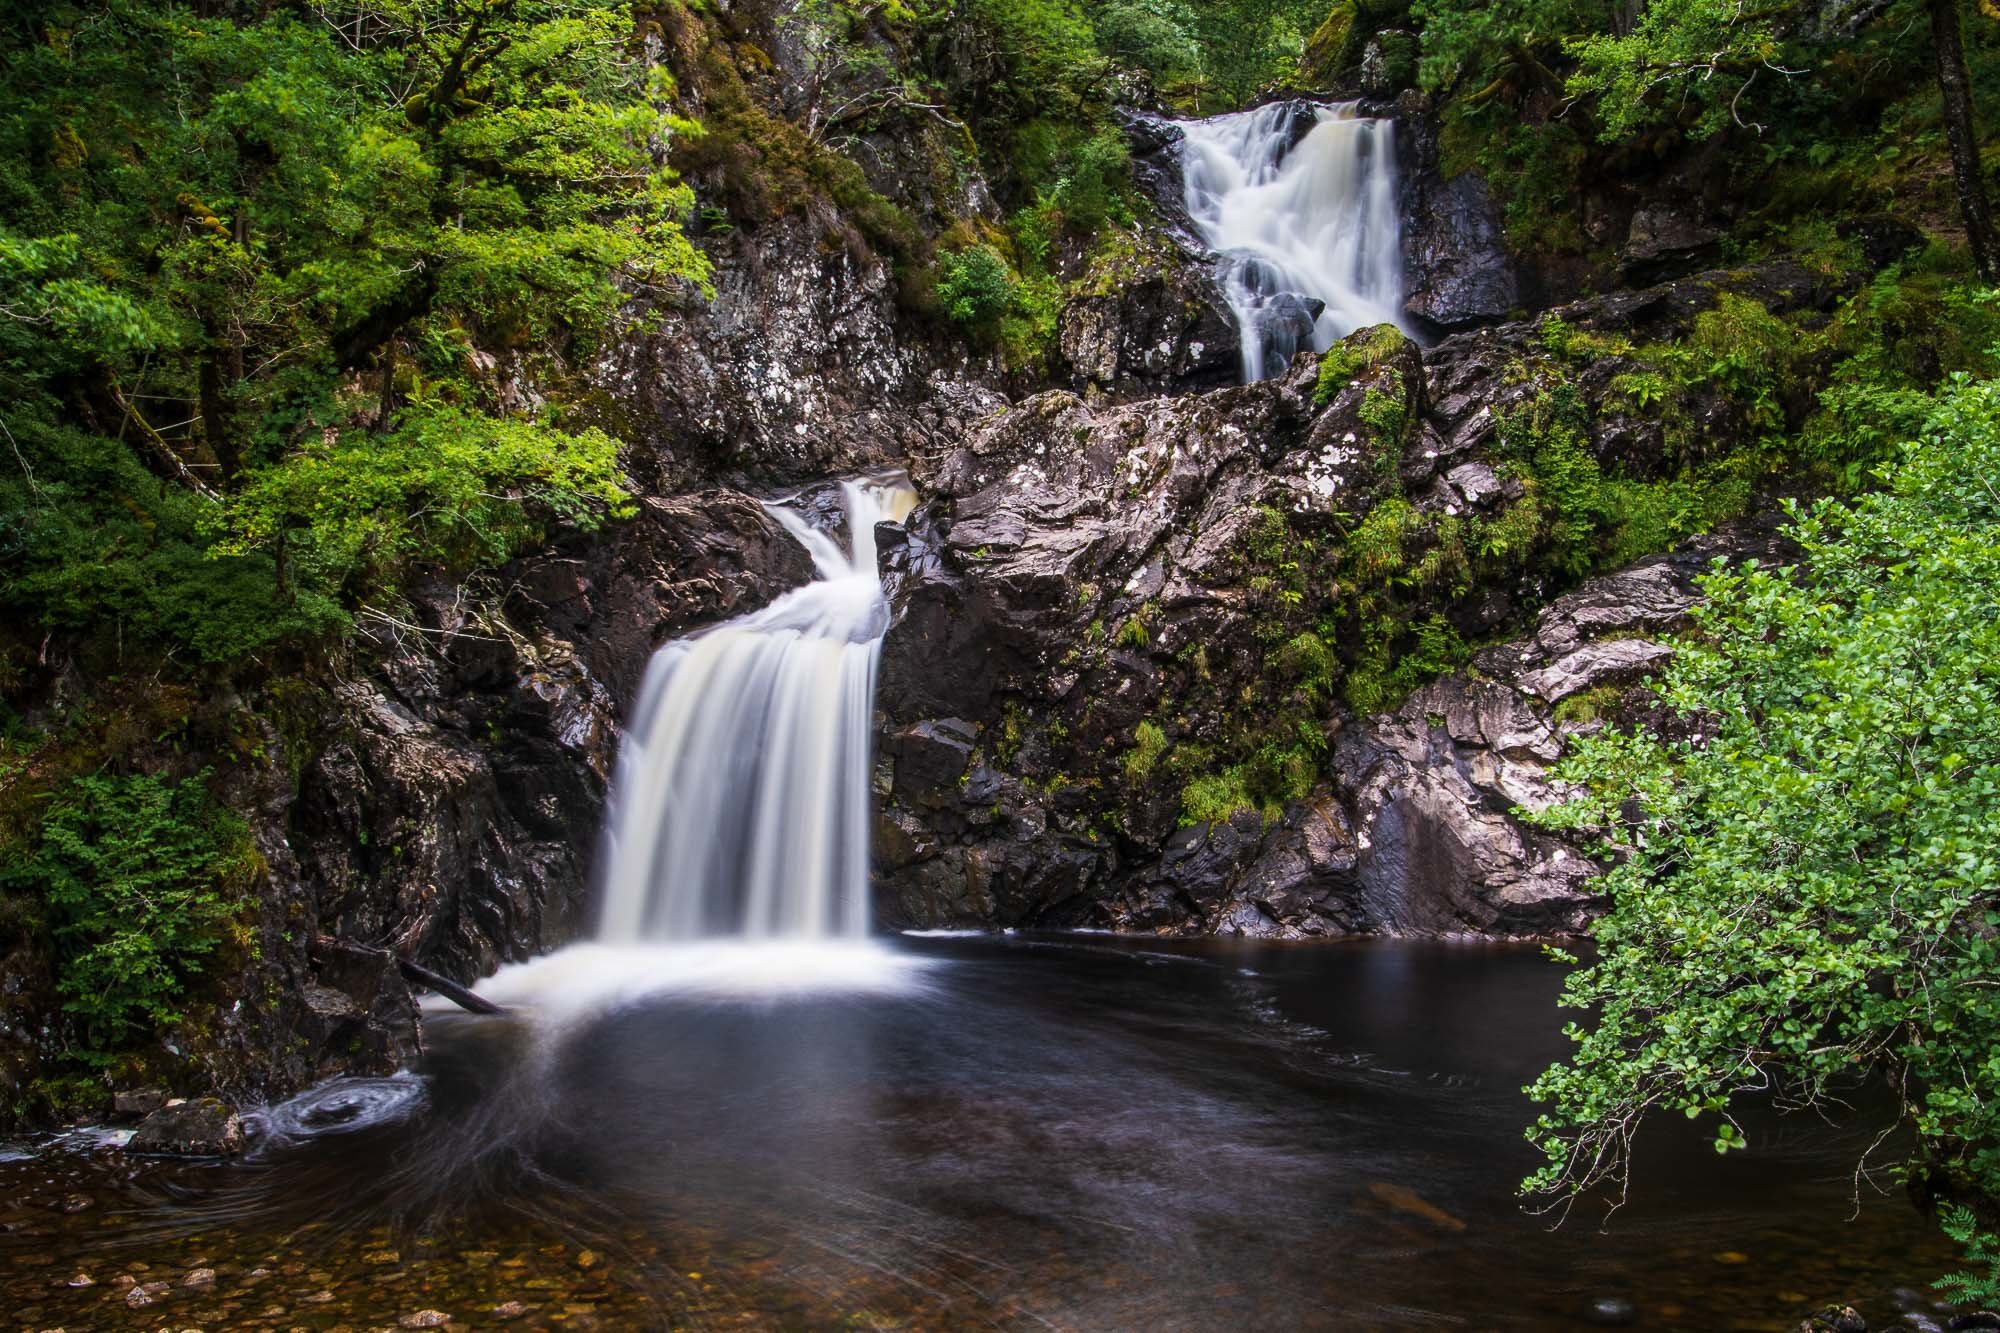 Scotland - Chia Aig falls